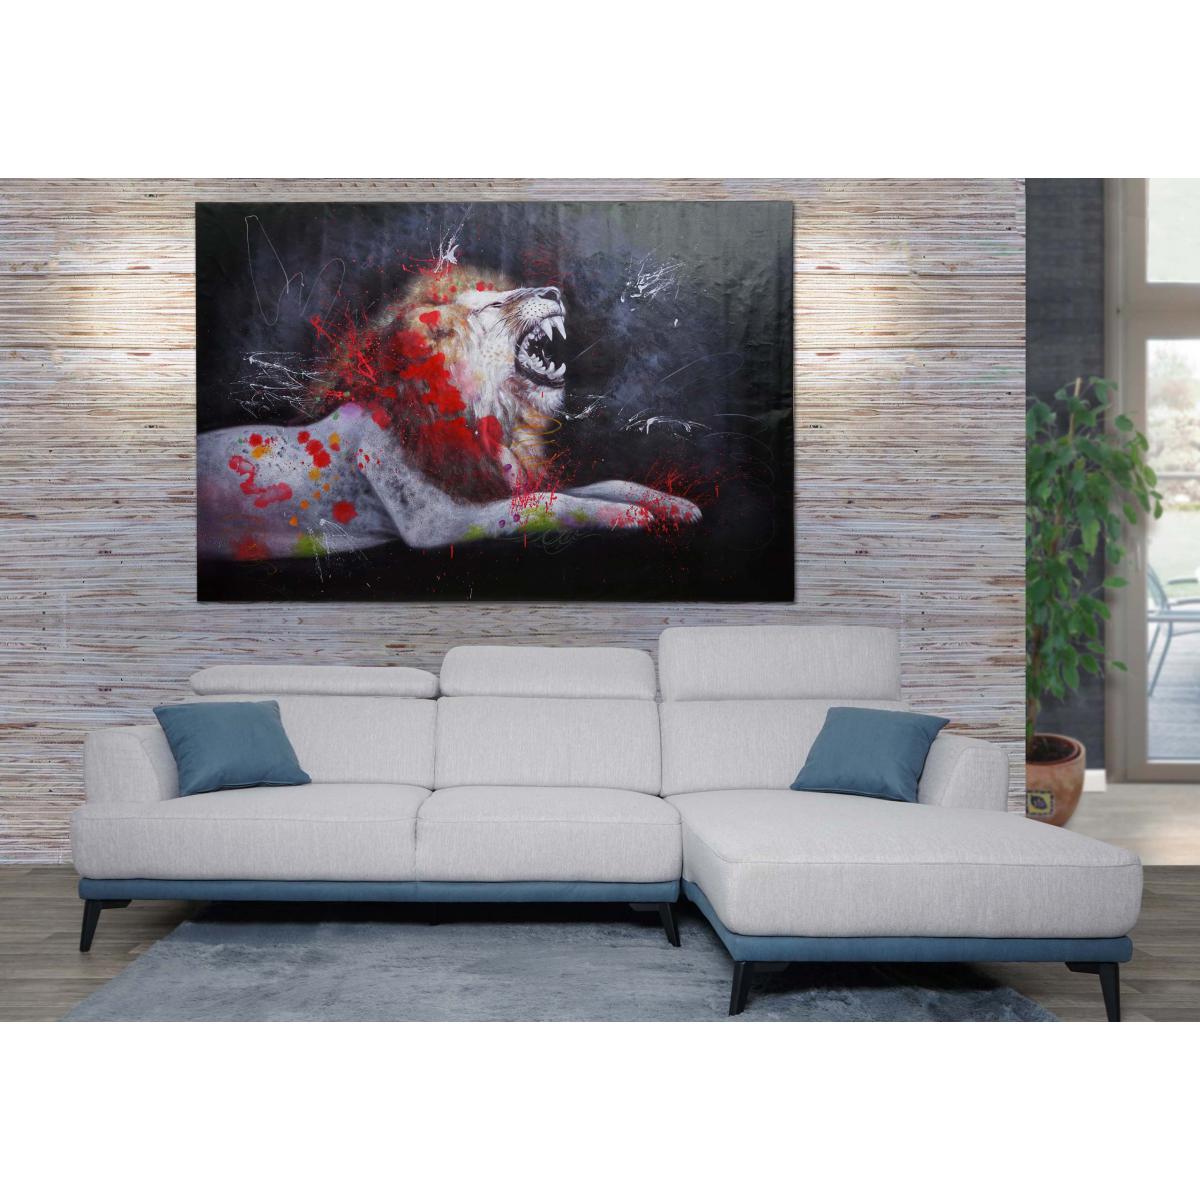 Mendler - Peinture à l'huile lion HWC-H25, peinture sur toile XL, peinte à la main ~ 180x120cm - Tableaux, peintures